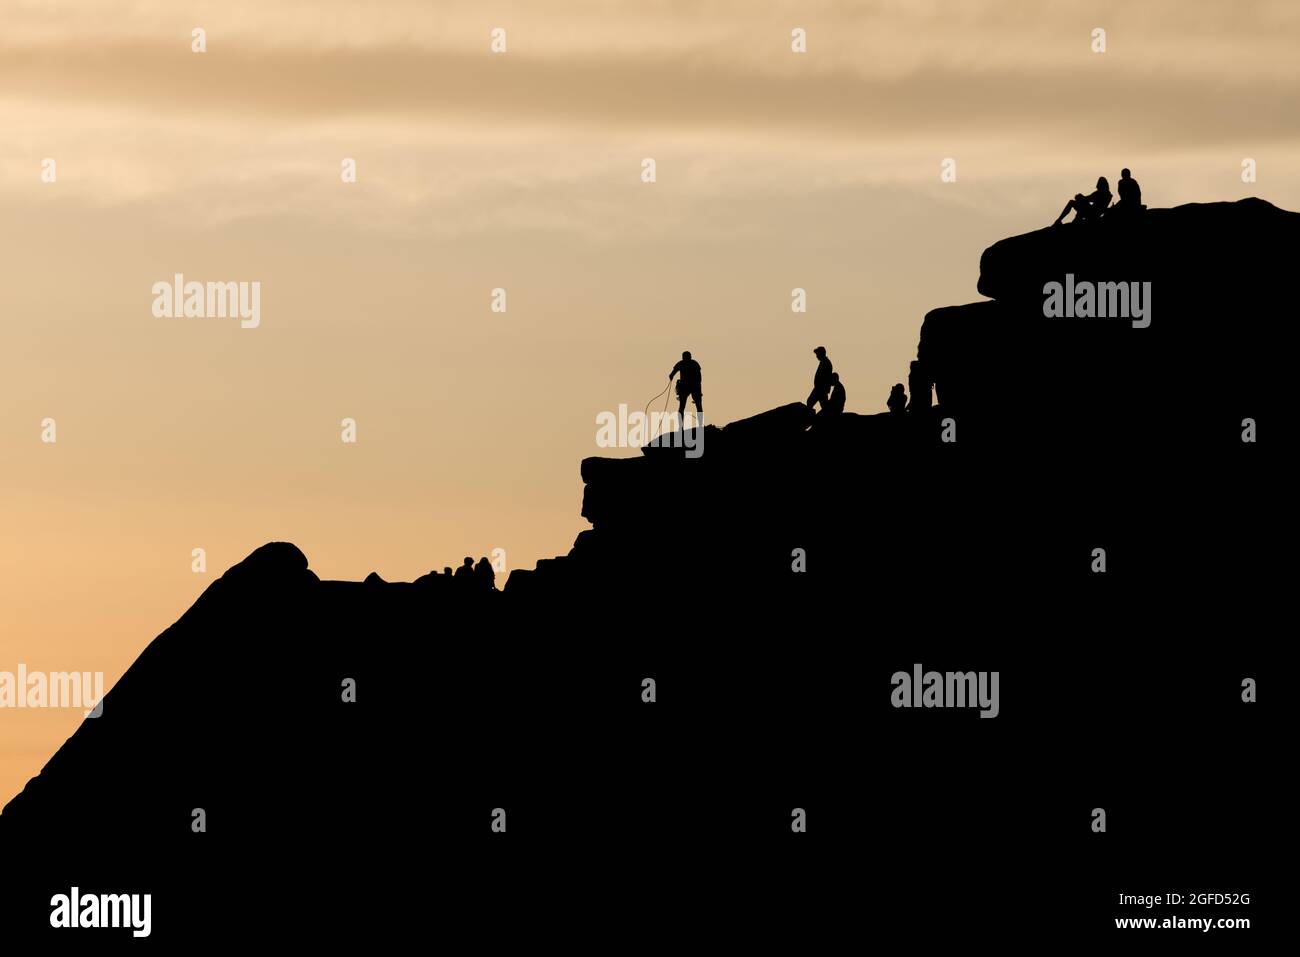 Une scène de silhouette spectaculaire en tant que grimpeur trie ses cordes au sommet d'une formation de roche frappante. D'autres personnes apprécient le coucher du soleil et la nature sauvage éloignée. Banque D'Images